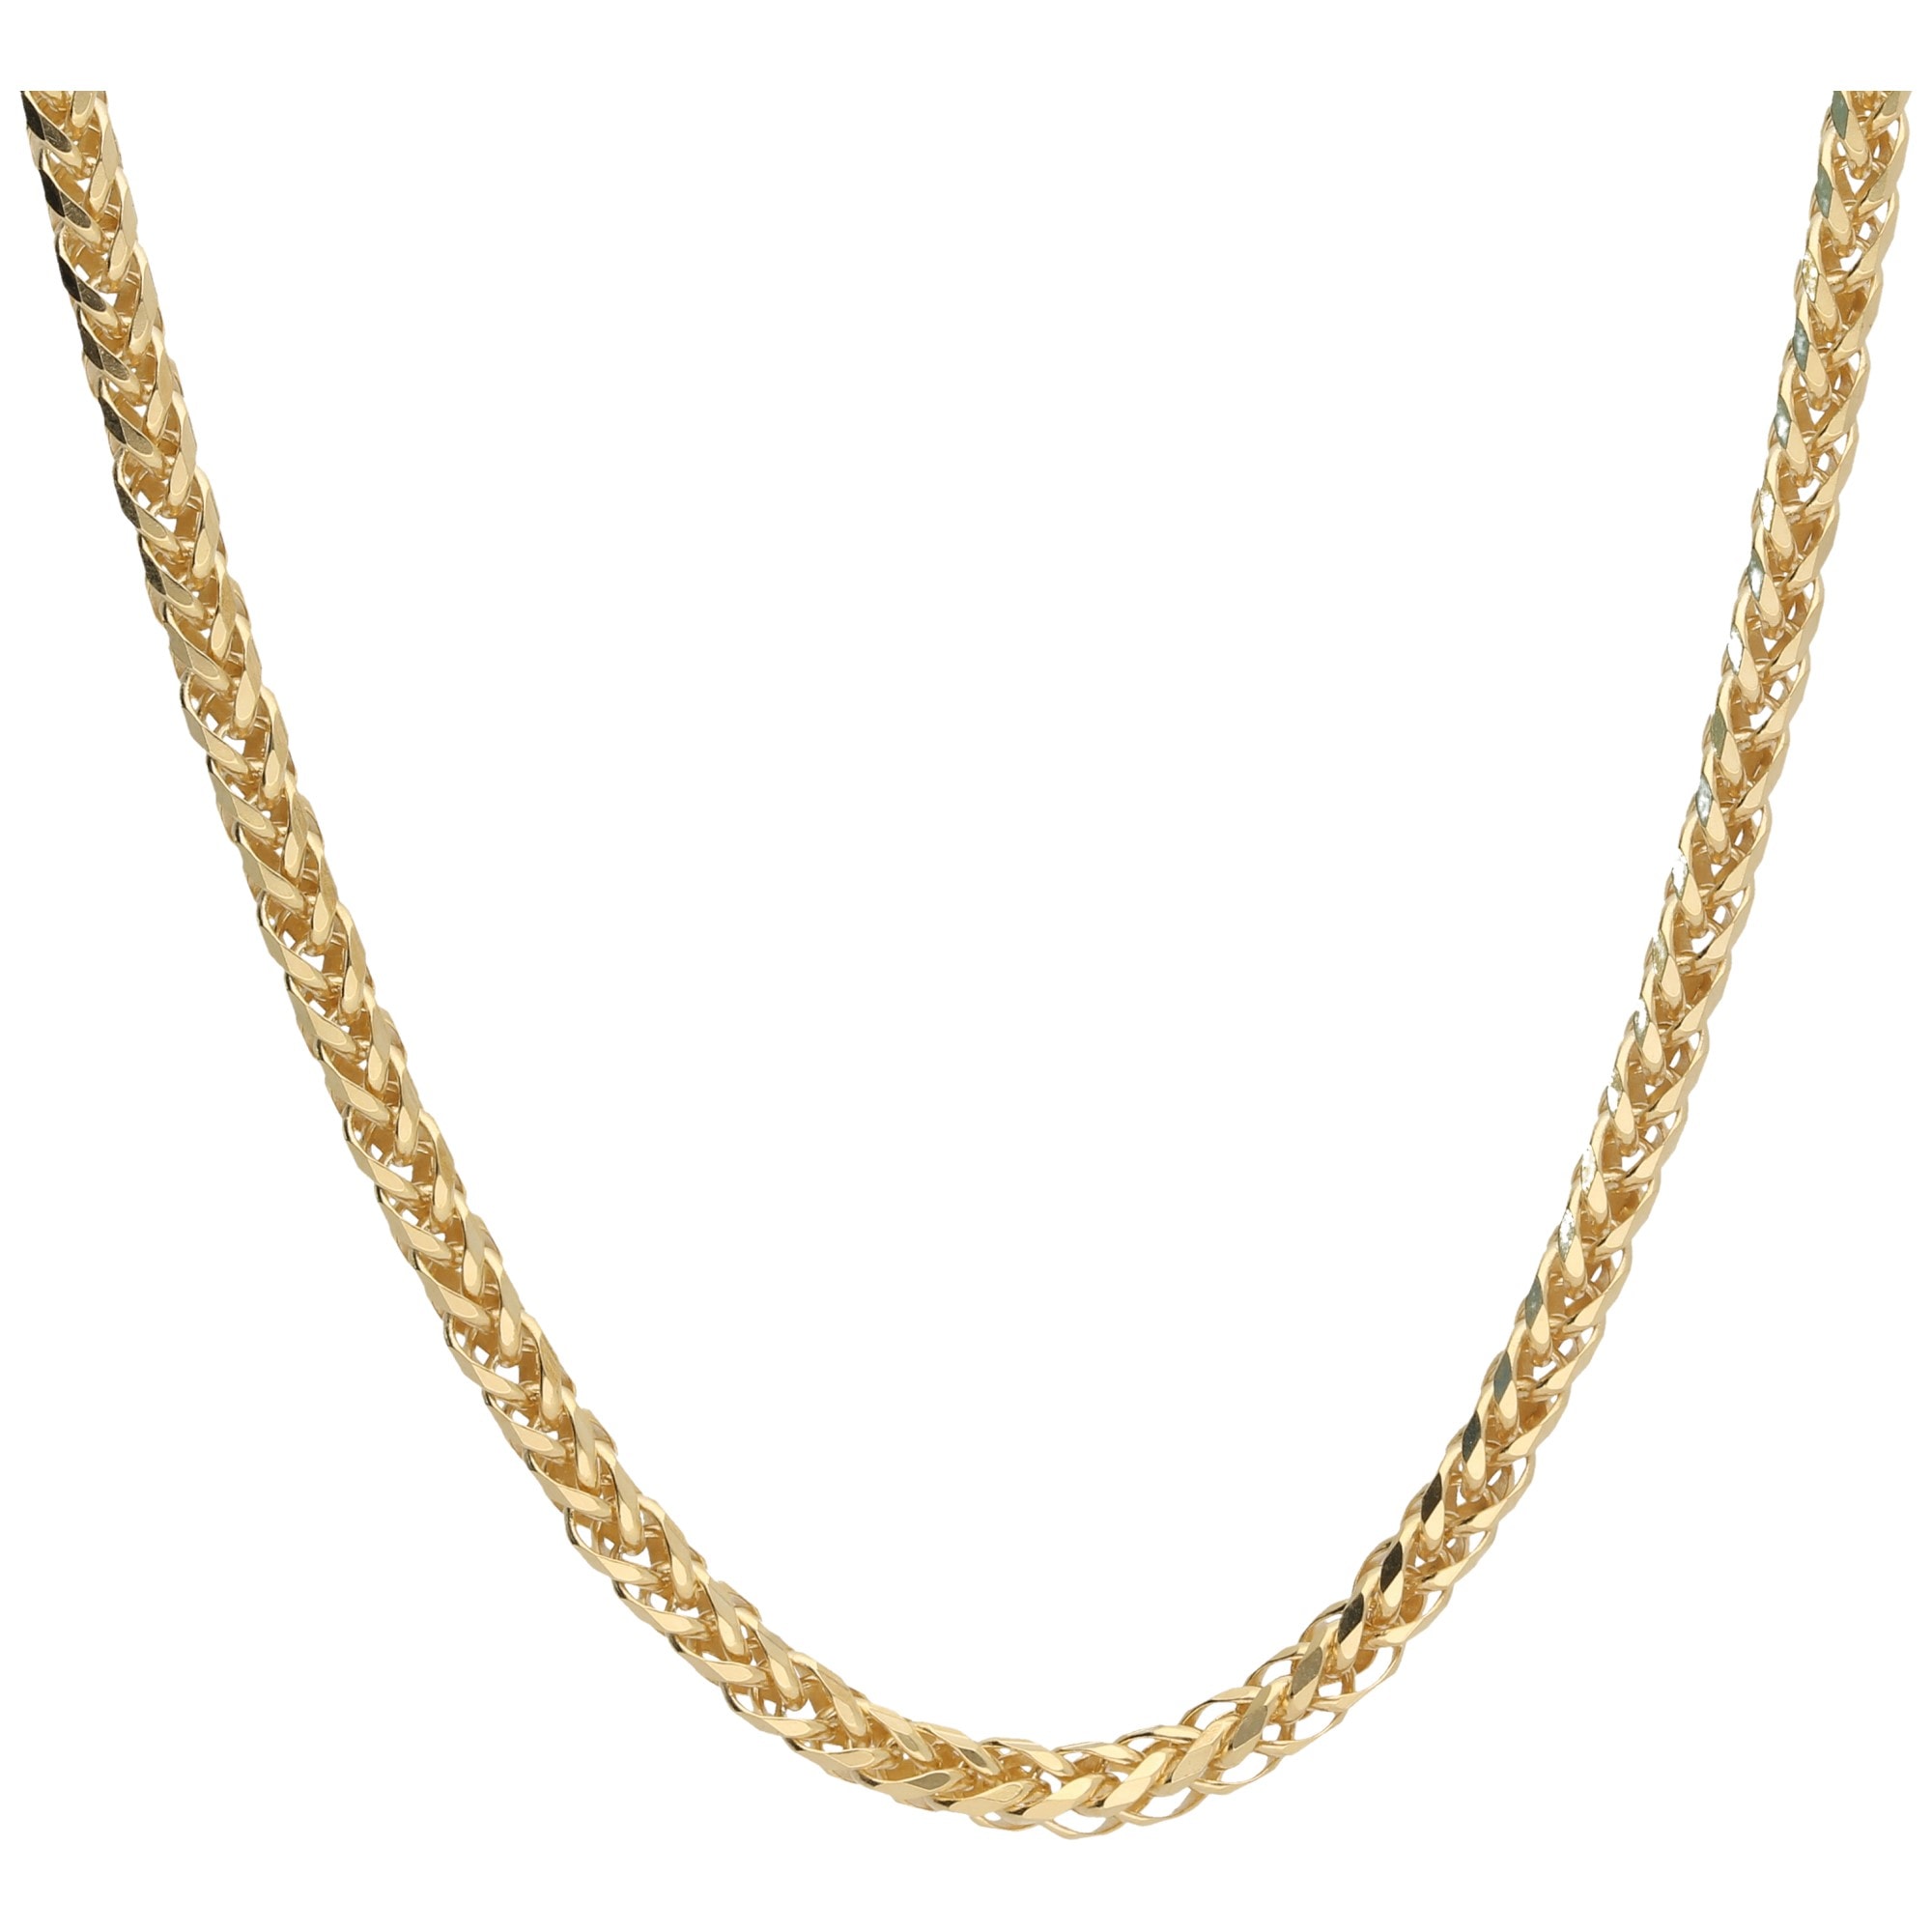 Goldkette für Damen online kaufen bei Universal